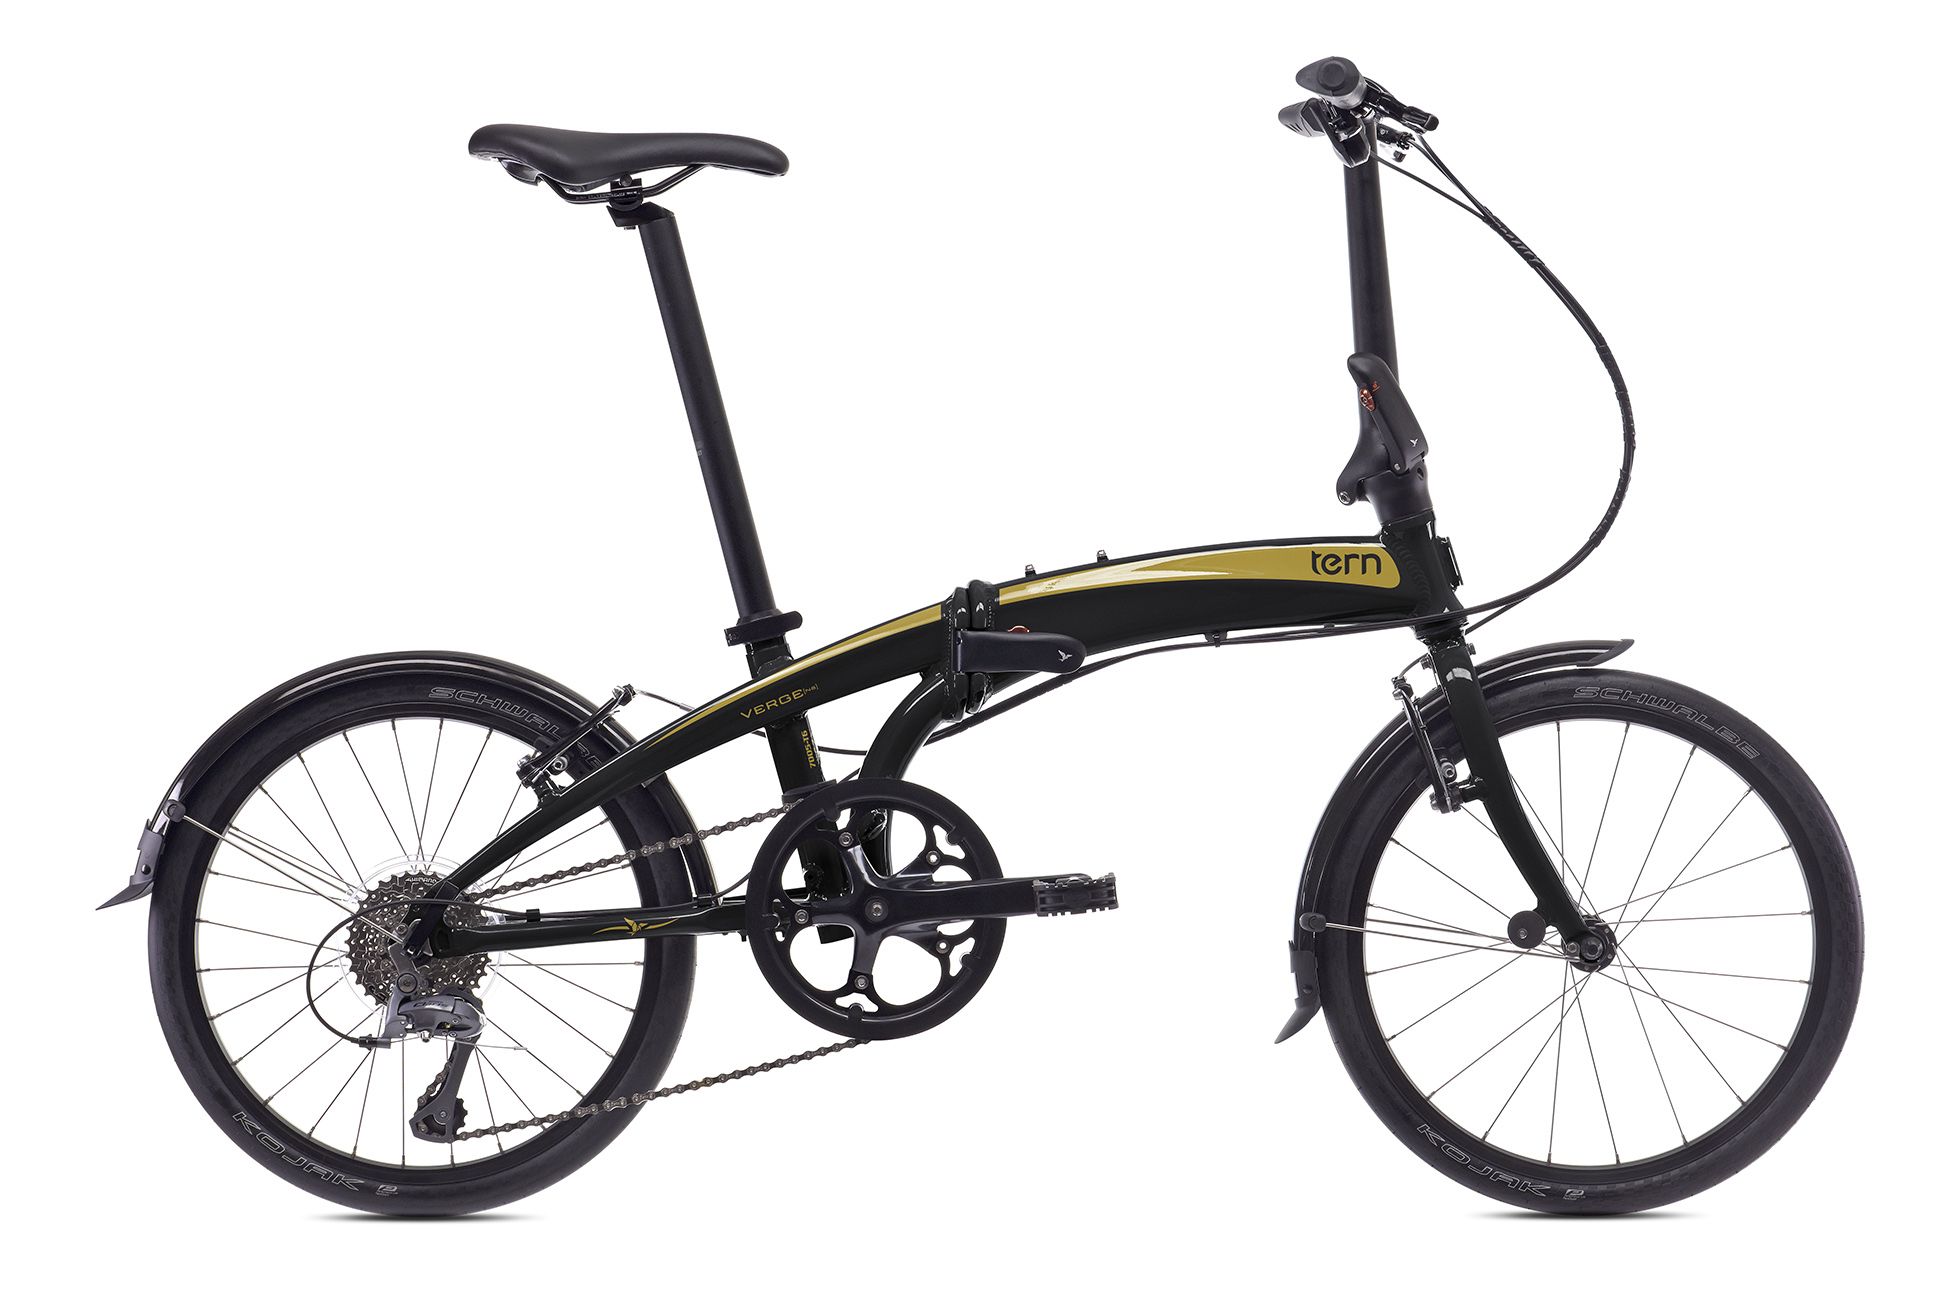  Отзывы о Складном велосипеде Tern Verge N8 2016